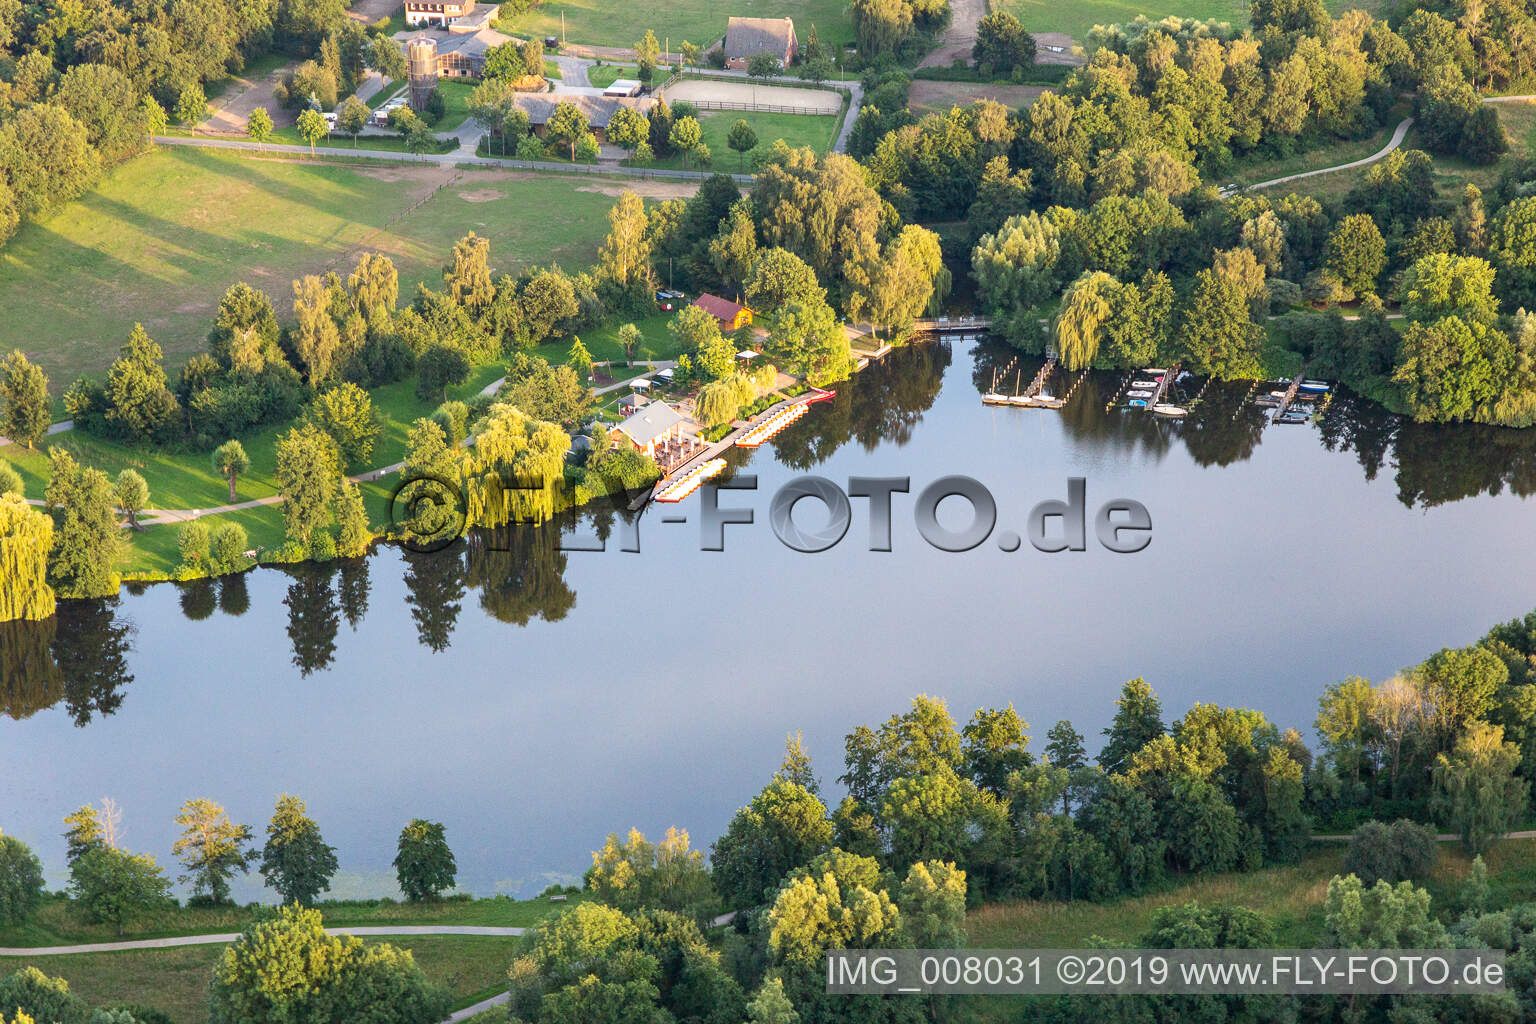 Aerial view of Pröbstingsee in Hoxfeld in the state North Rhine-Westphalia, Germany